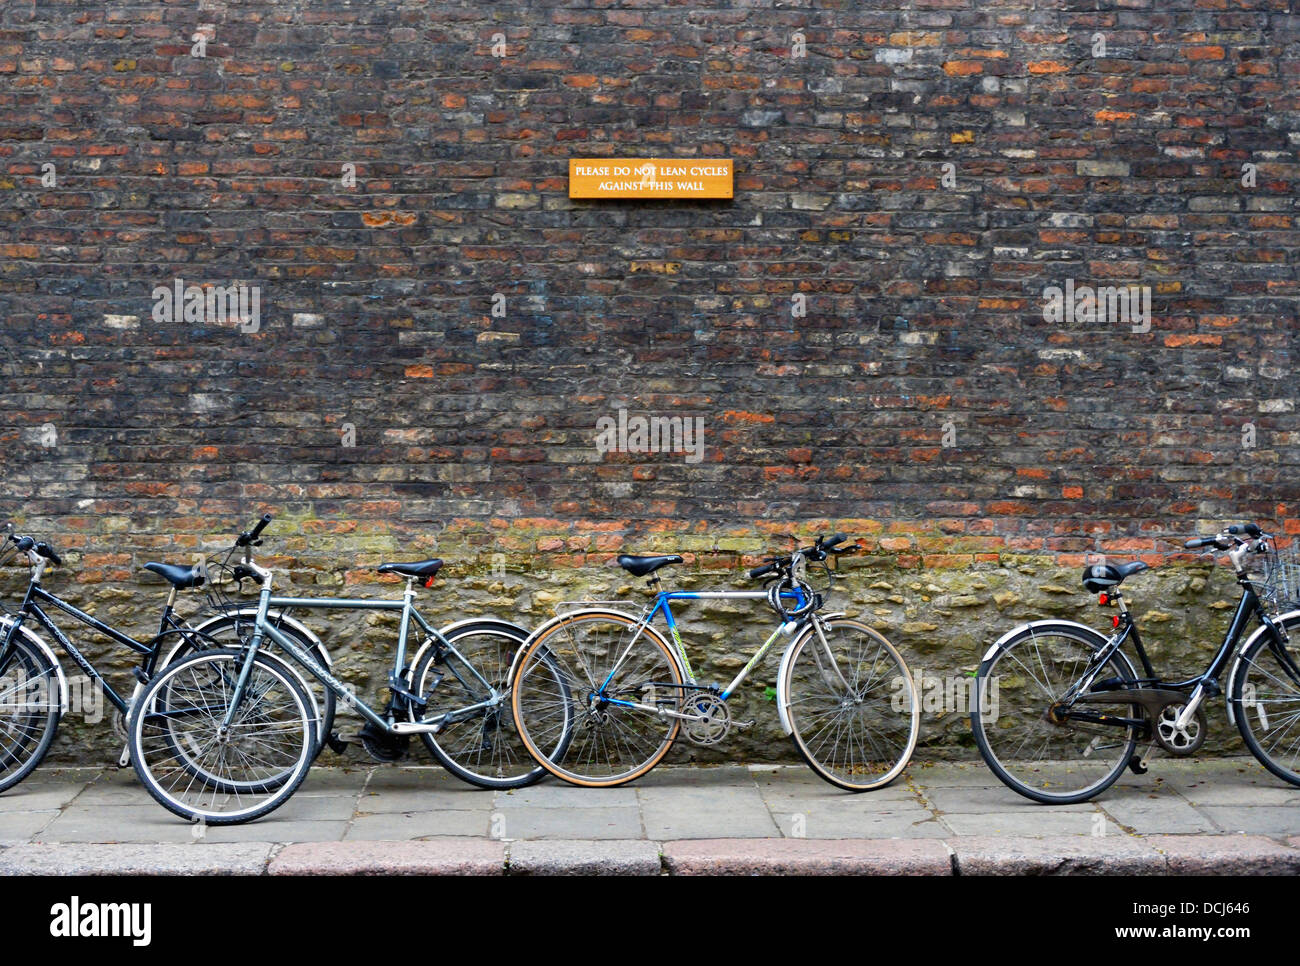 'Veuillez NE PAS S'APPUYER CONTRE CE MUR CYCLES'. Cambridge. Cambridgeshire, Angleterre, Royaume-Uni, Europe. Banque D'Images